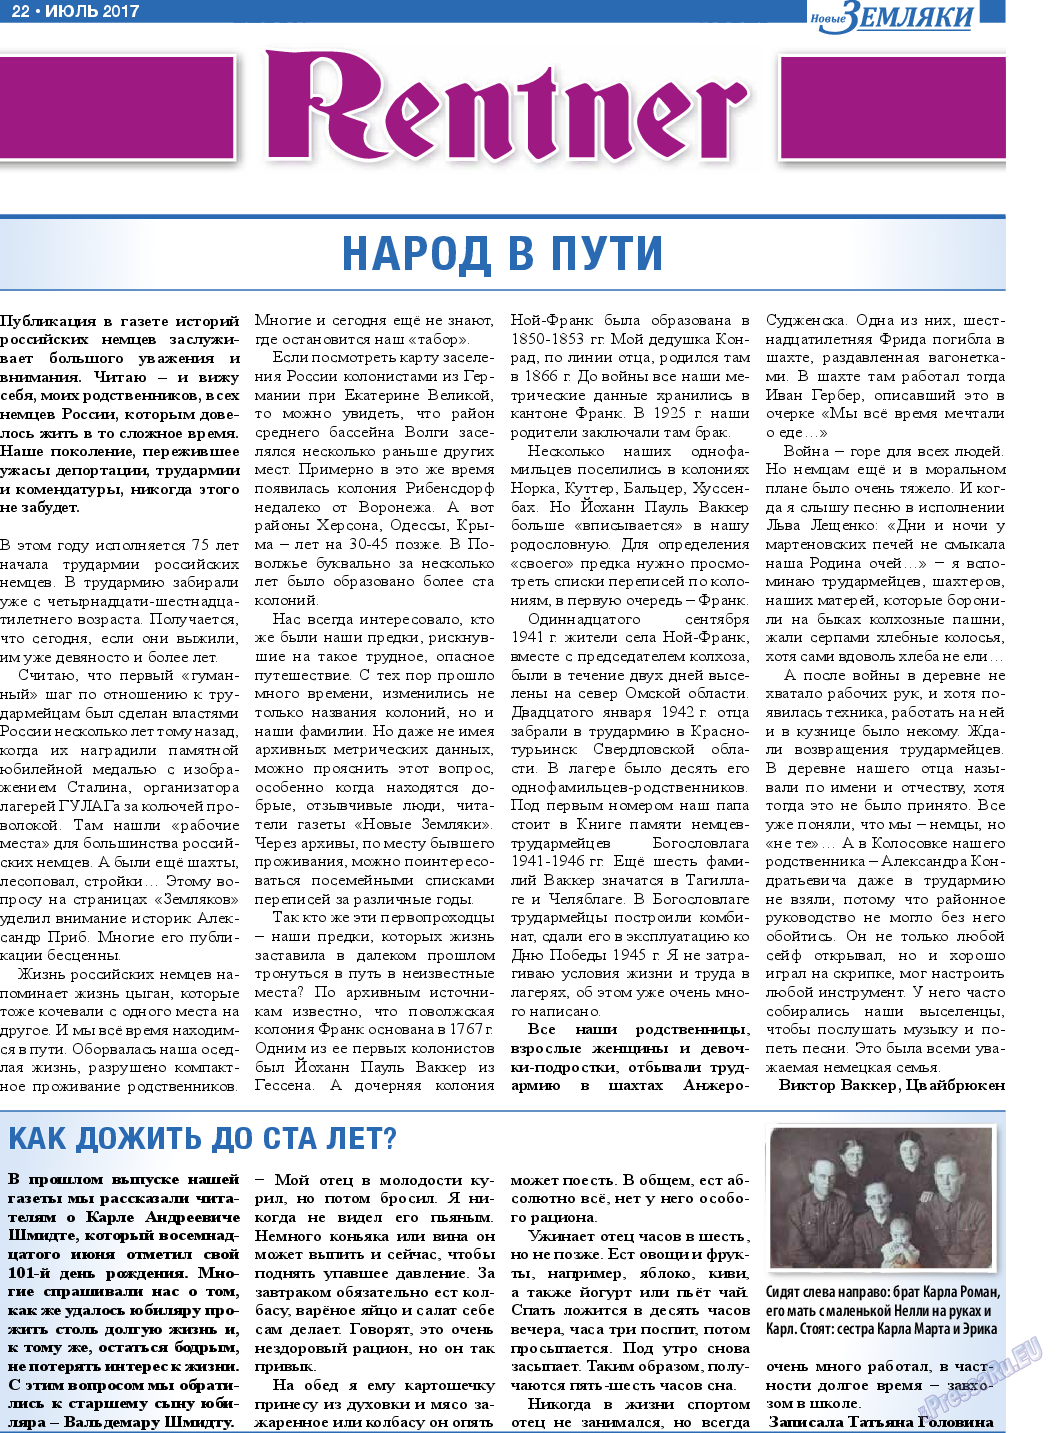 Новые Земляки, газета. 2017 №7 стр.22